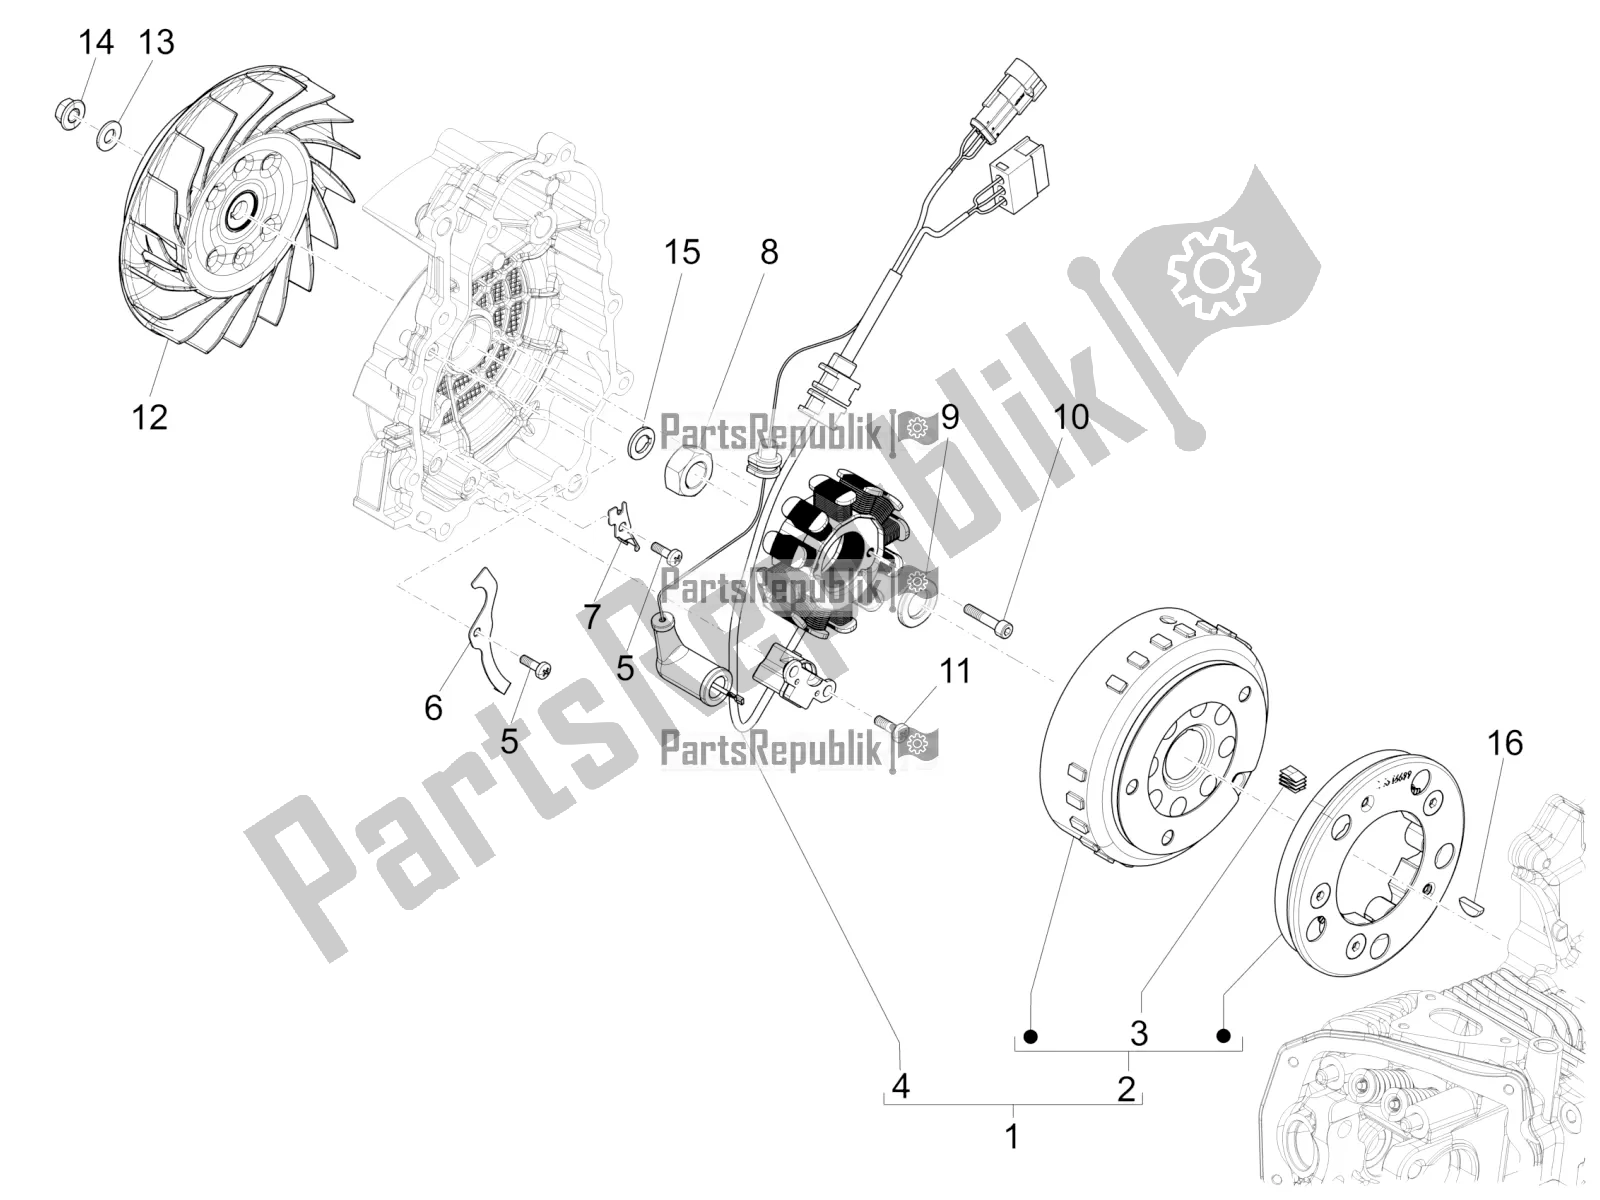 Toutes les pièces pour le Volant Magnéto du Vespa Sprint 150 Iget Abs/no ABS Apac 2020